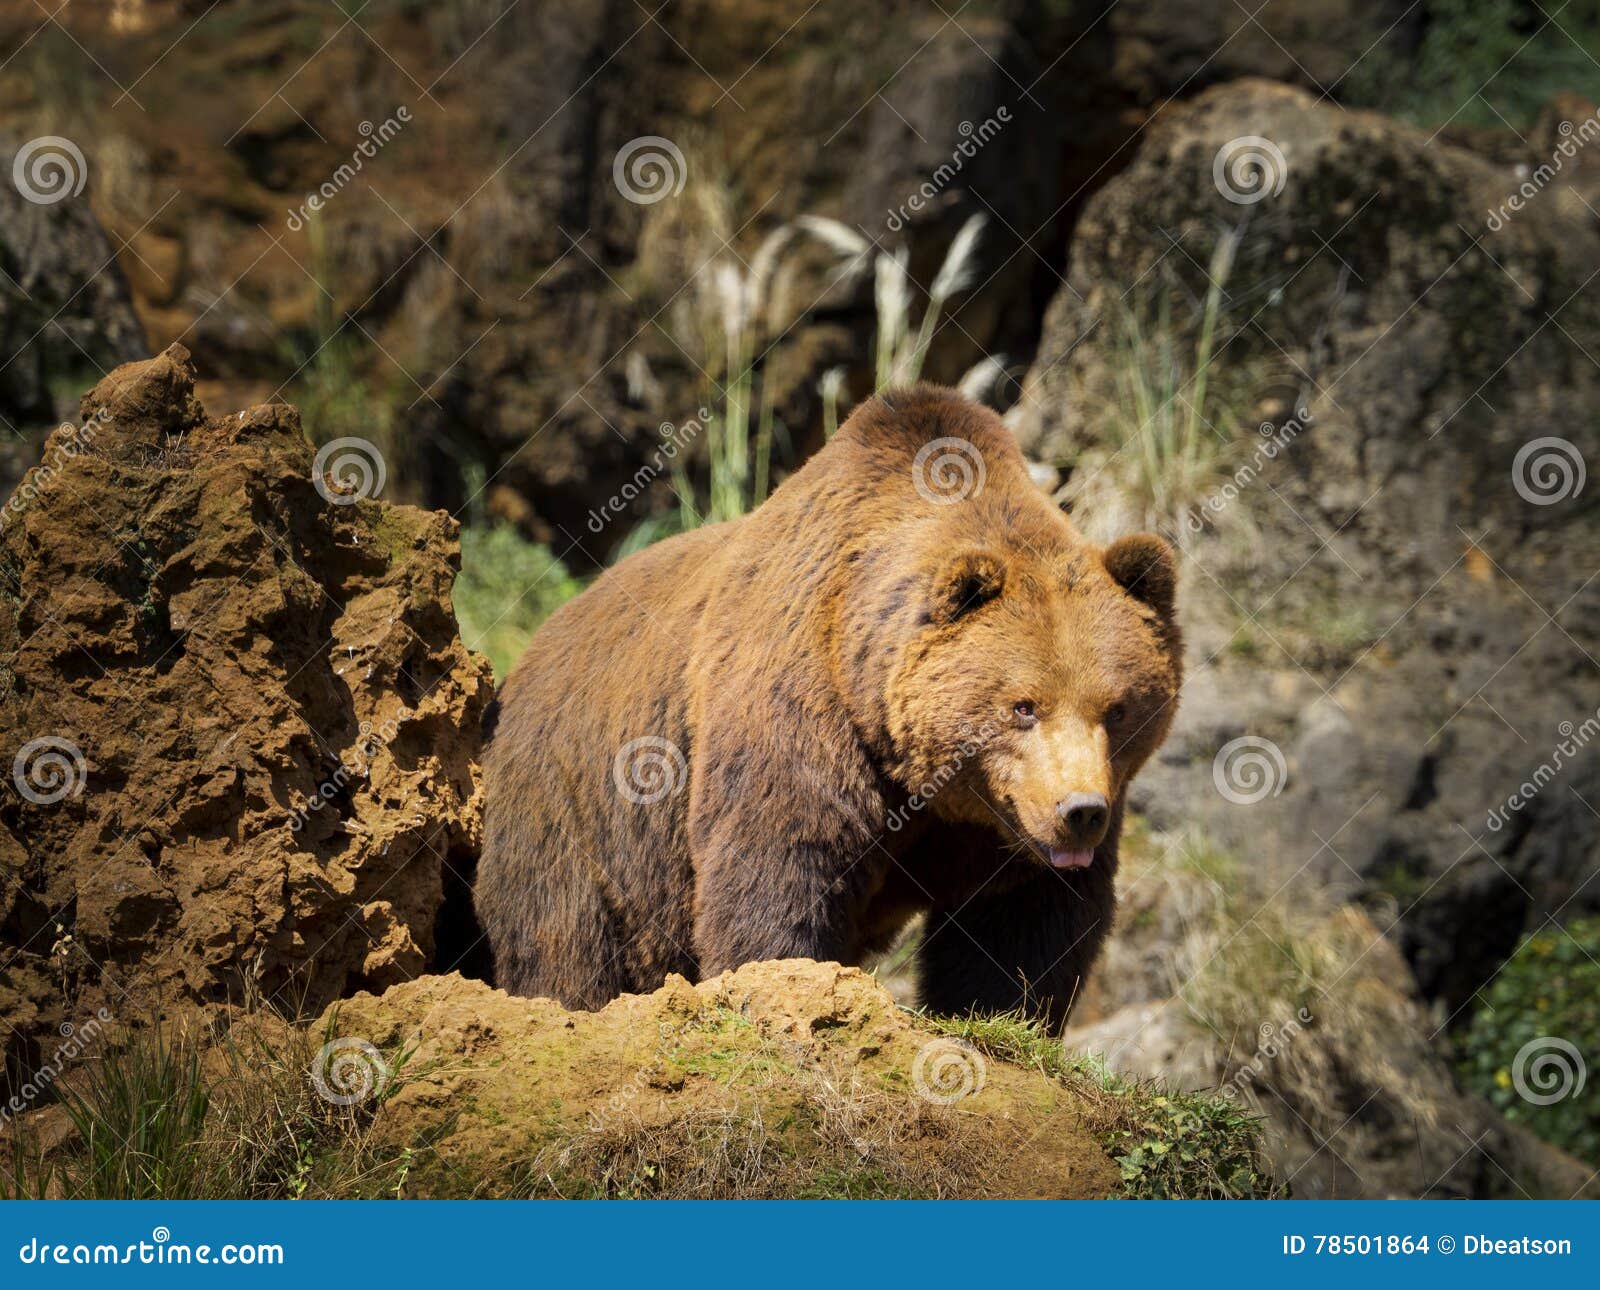 cantabrian brown bear